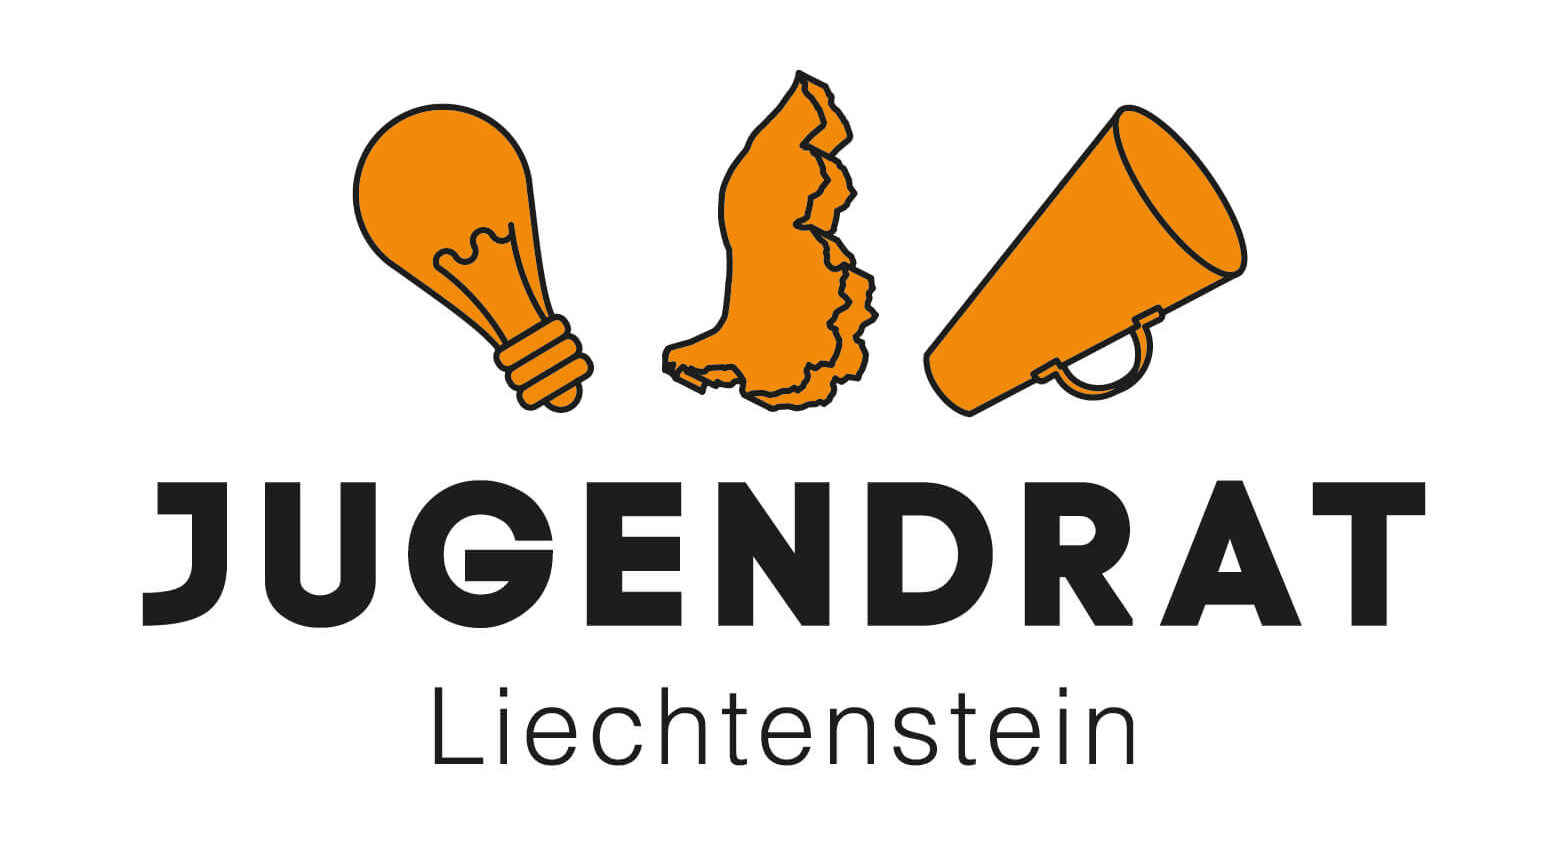 Jugendrat Liechtenstein - Förderung der politischen Partizipation in Liechtenstein